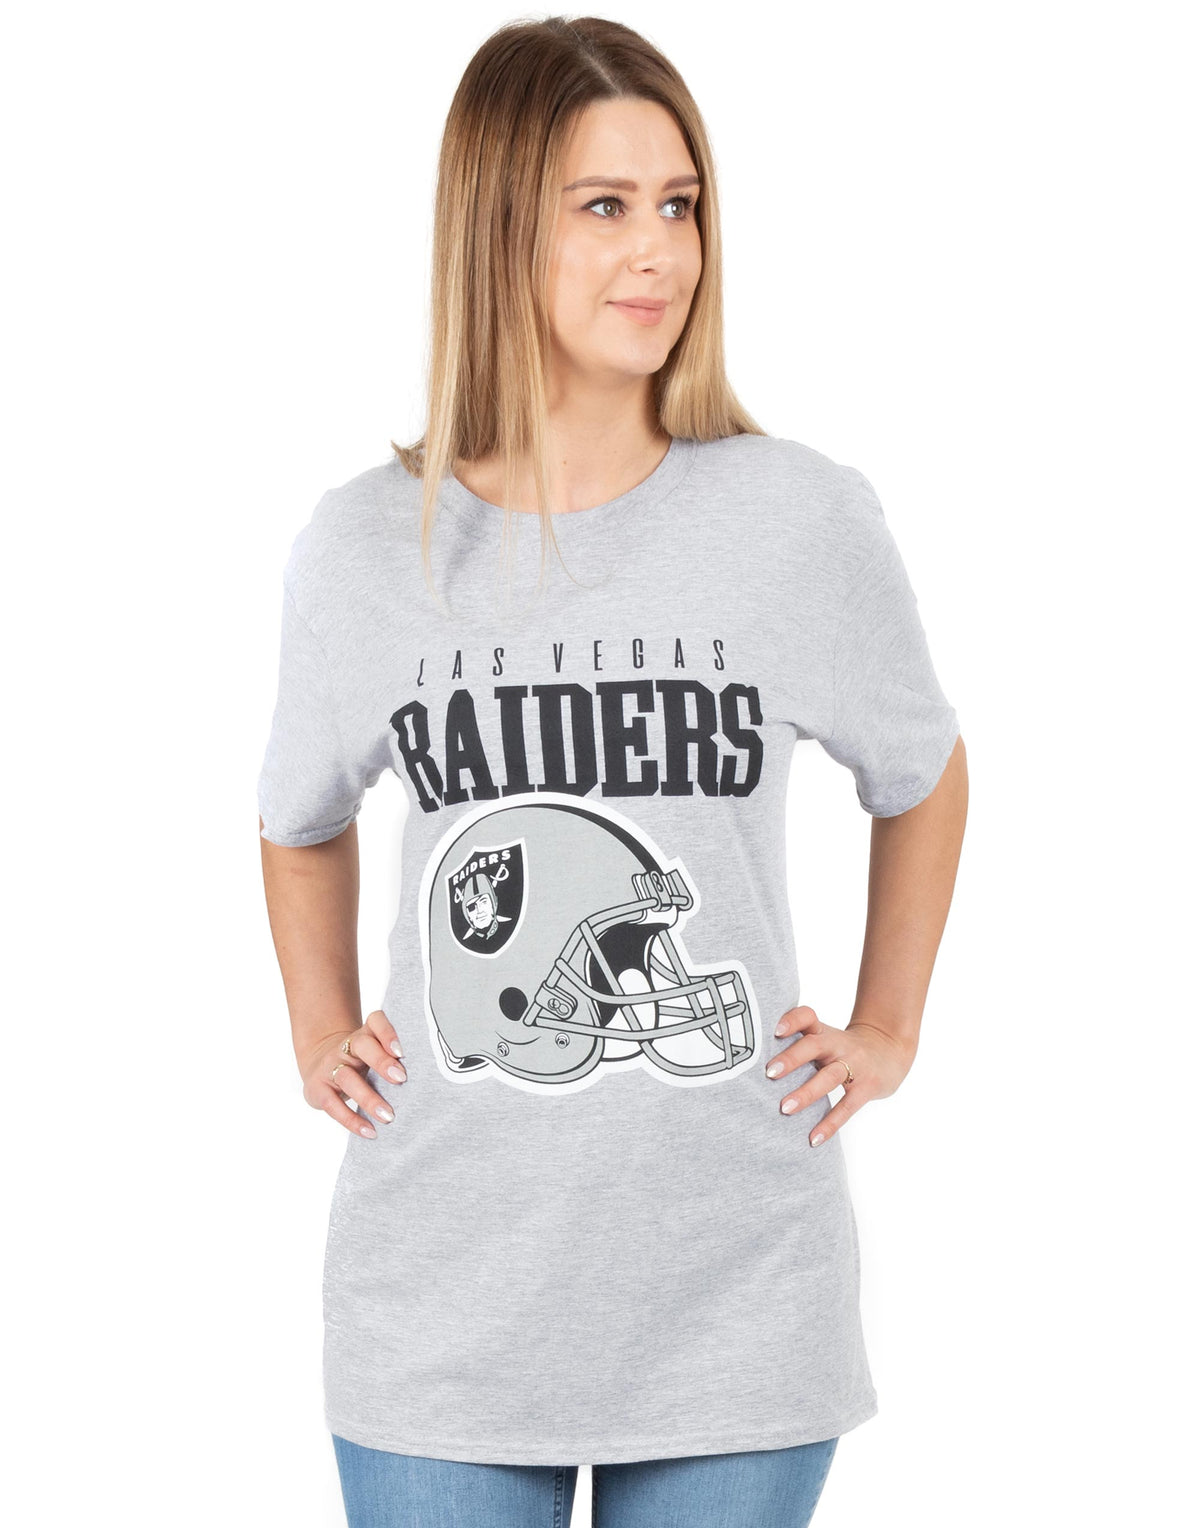 raiders shirt womens